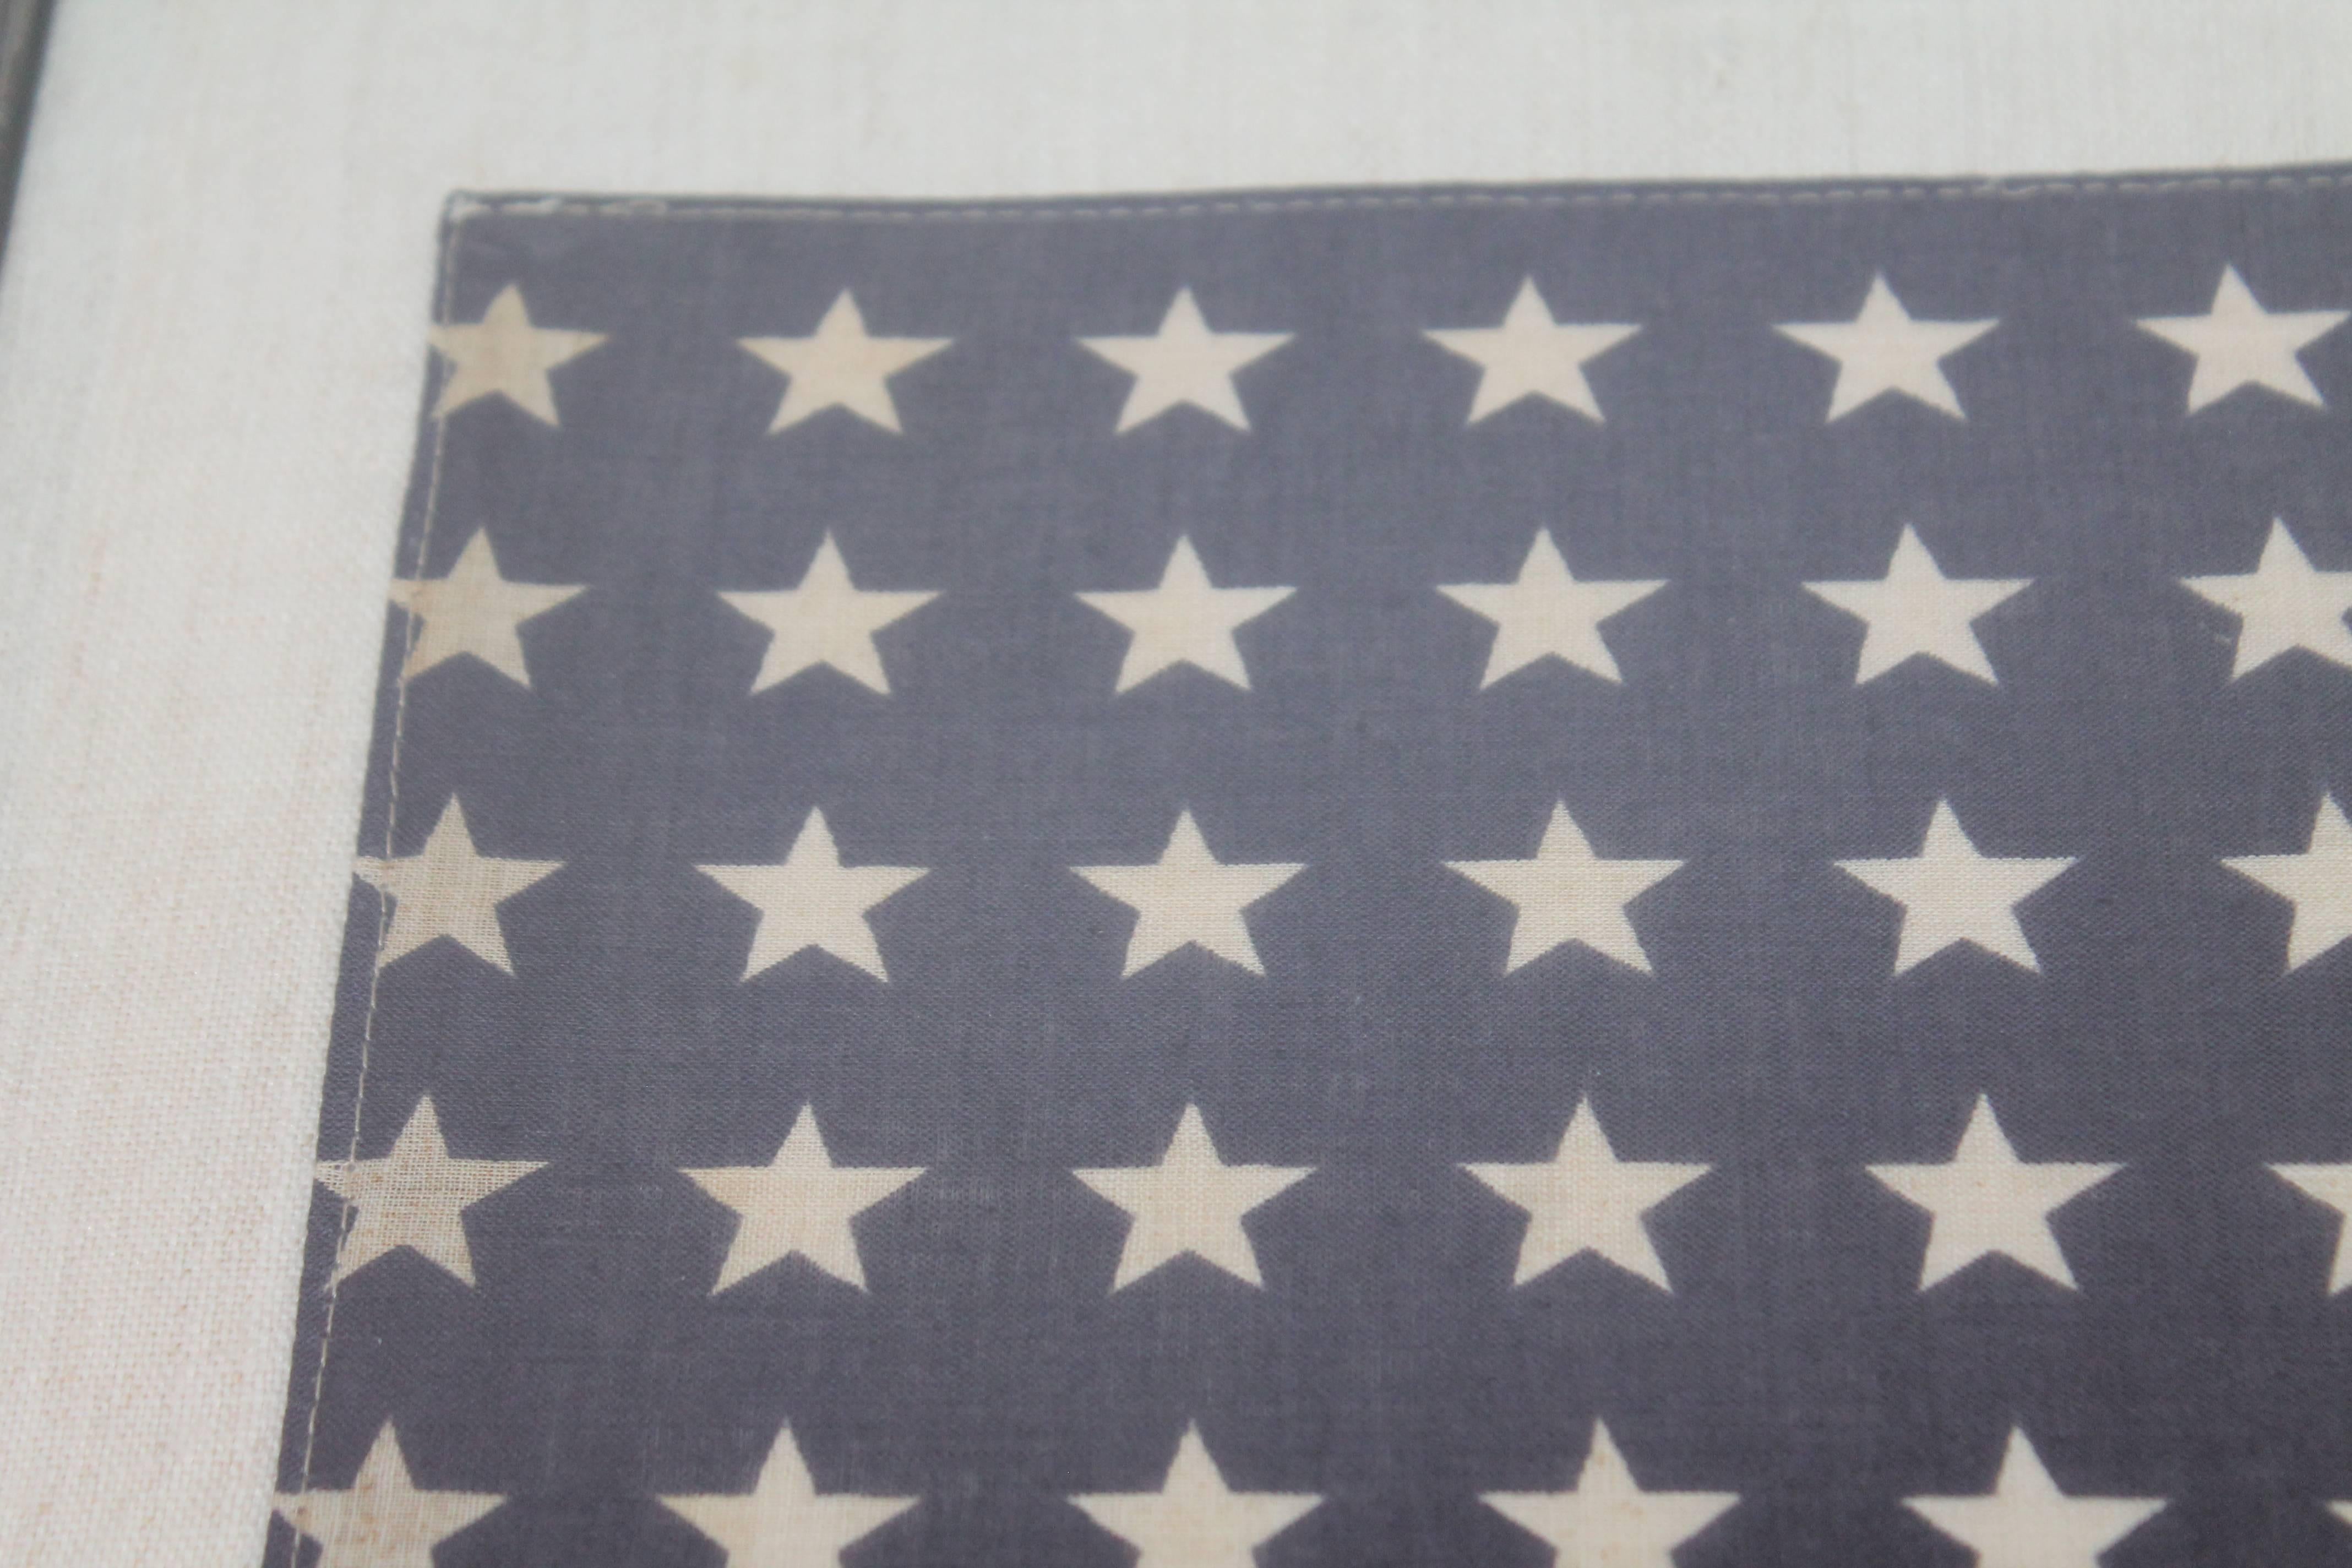 American Custom Framed 48 Star Flag Sewn on Homespun Linen